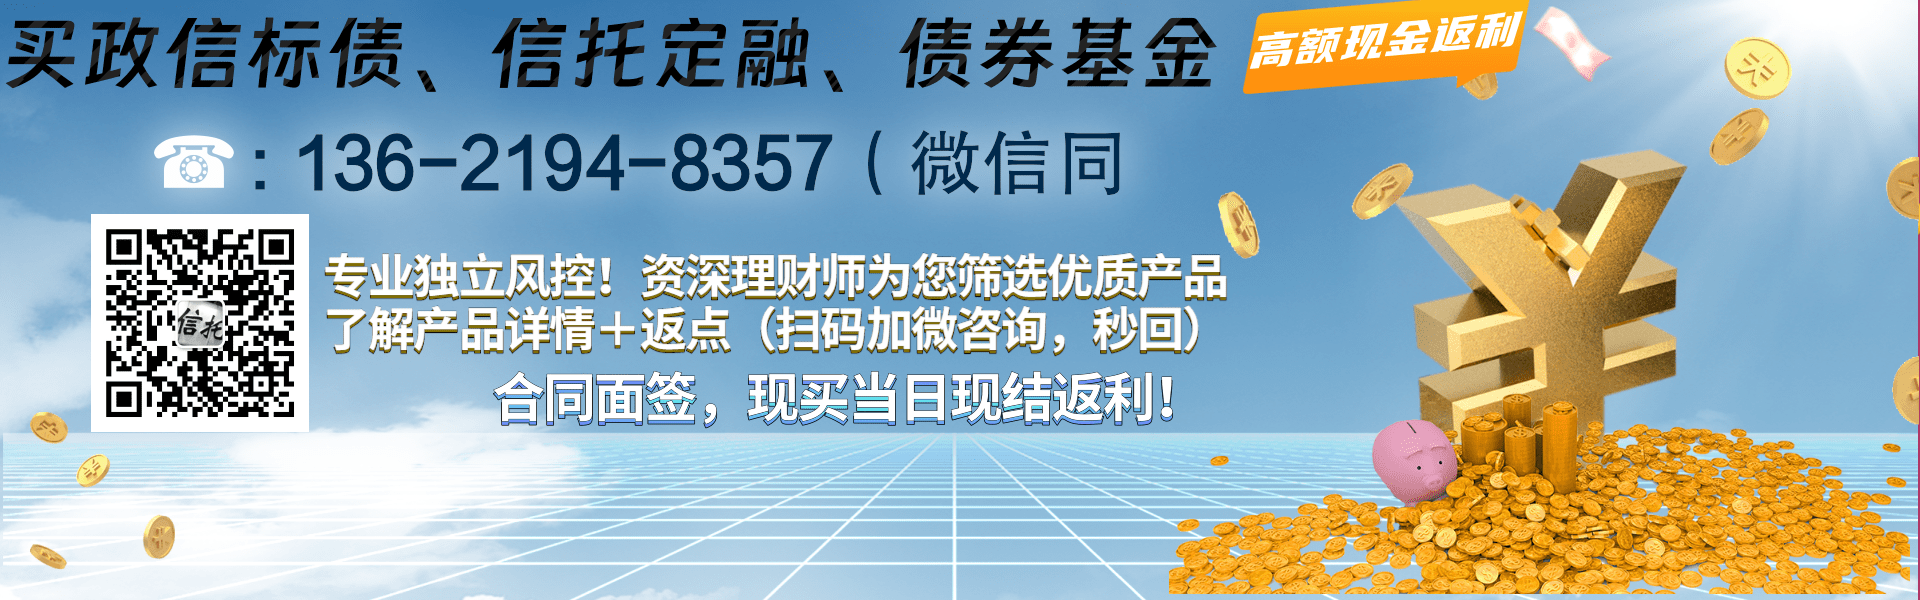 云南·昆明市土地开发投资经营2023年城投债项目